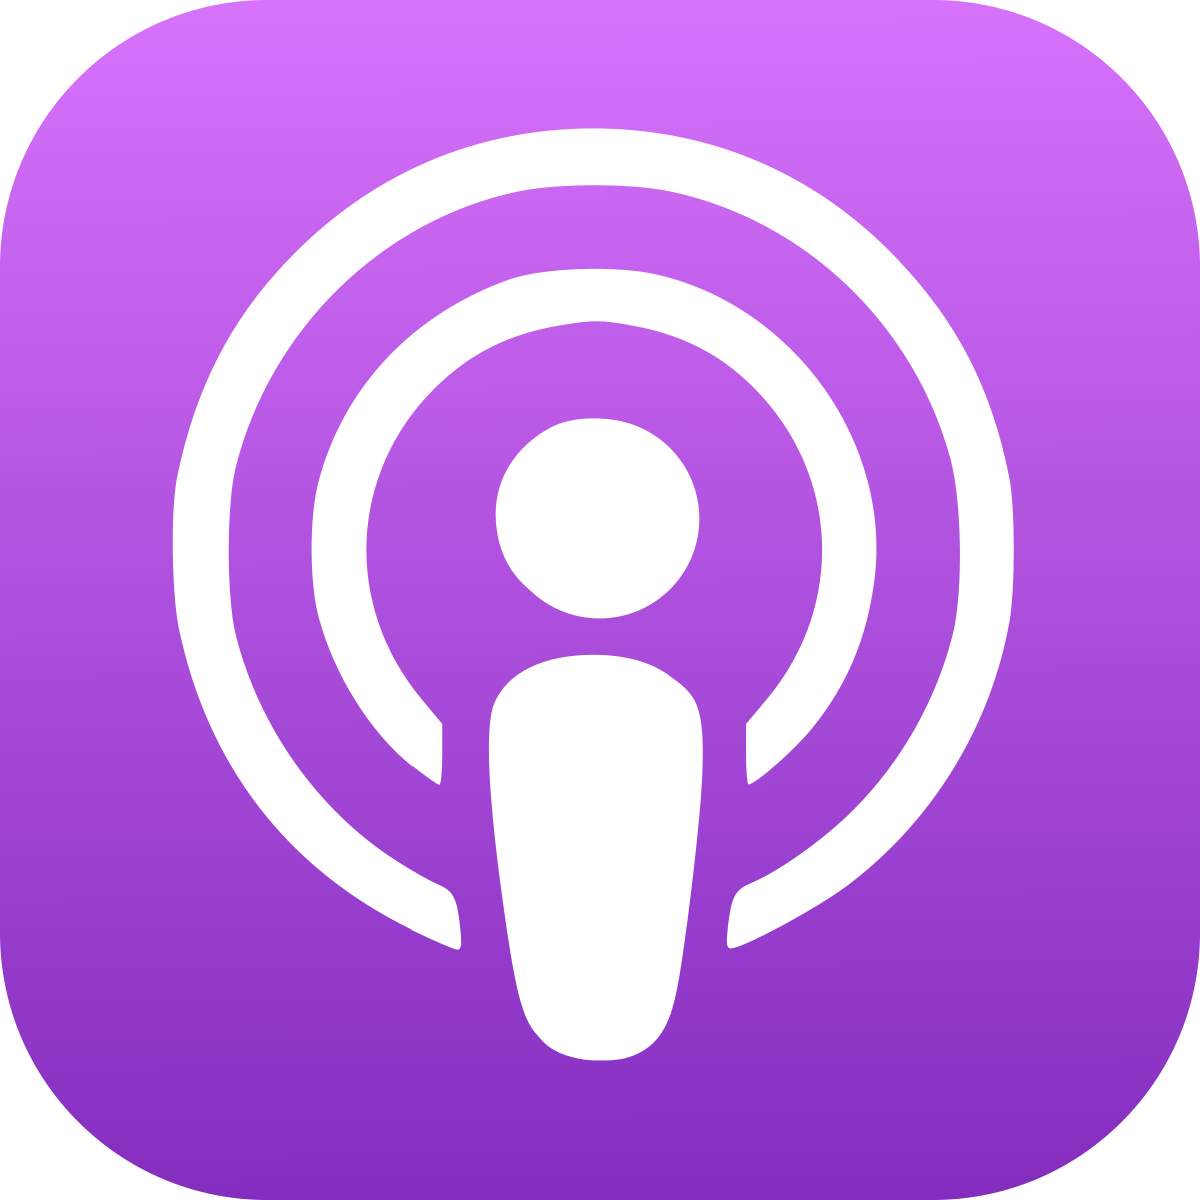 maximn1384 via Apple Podcasts